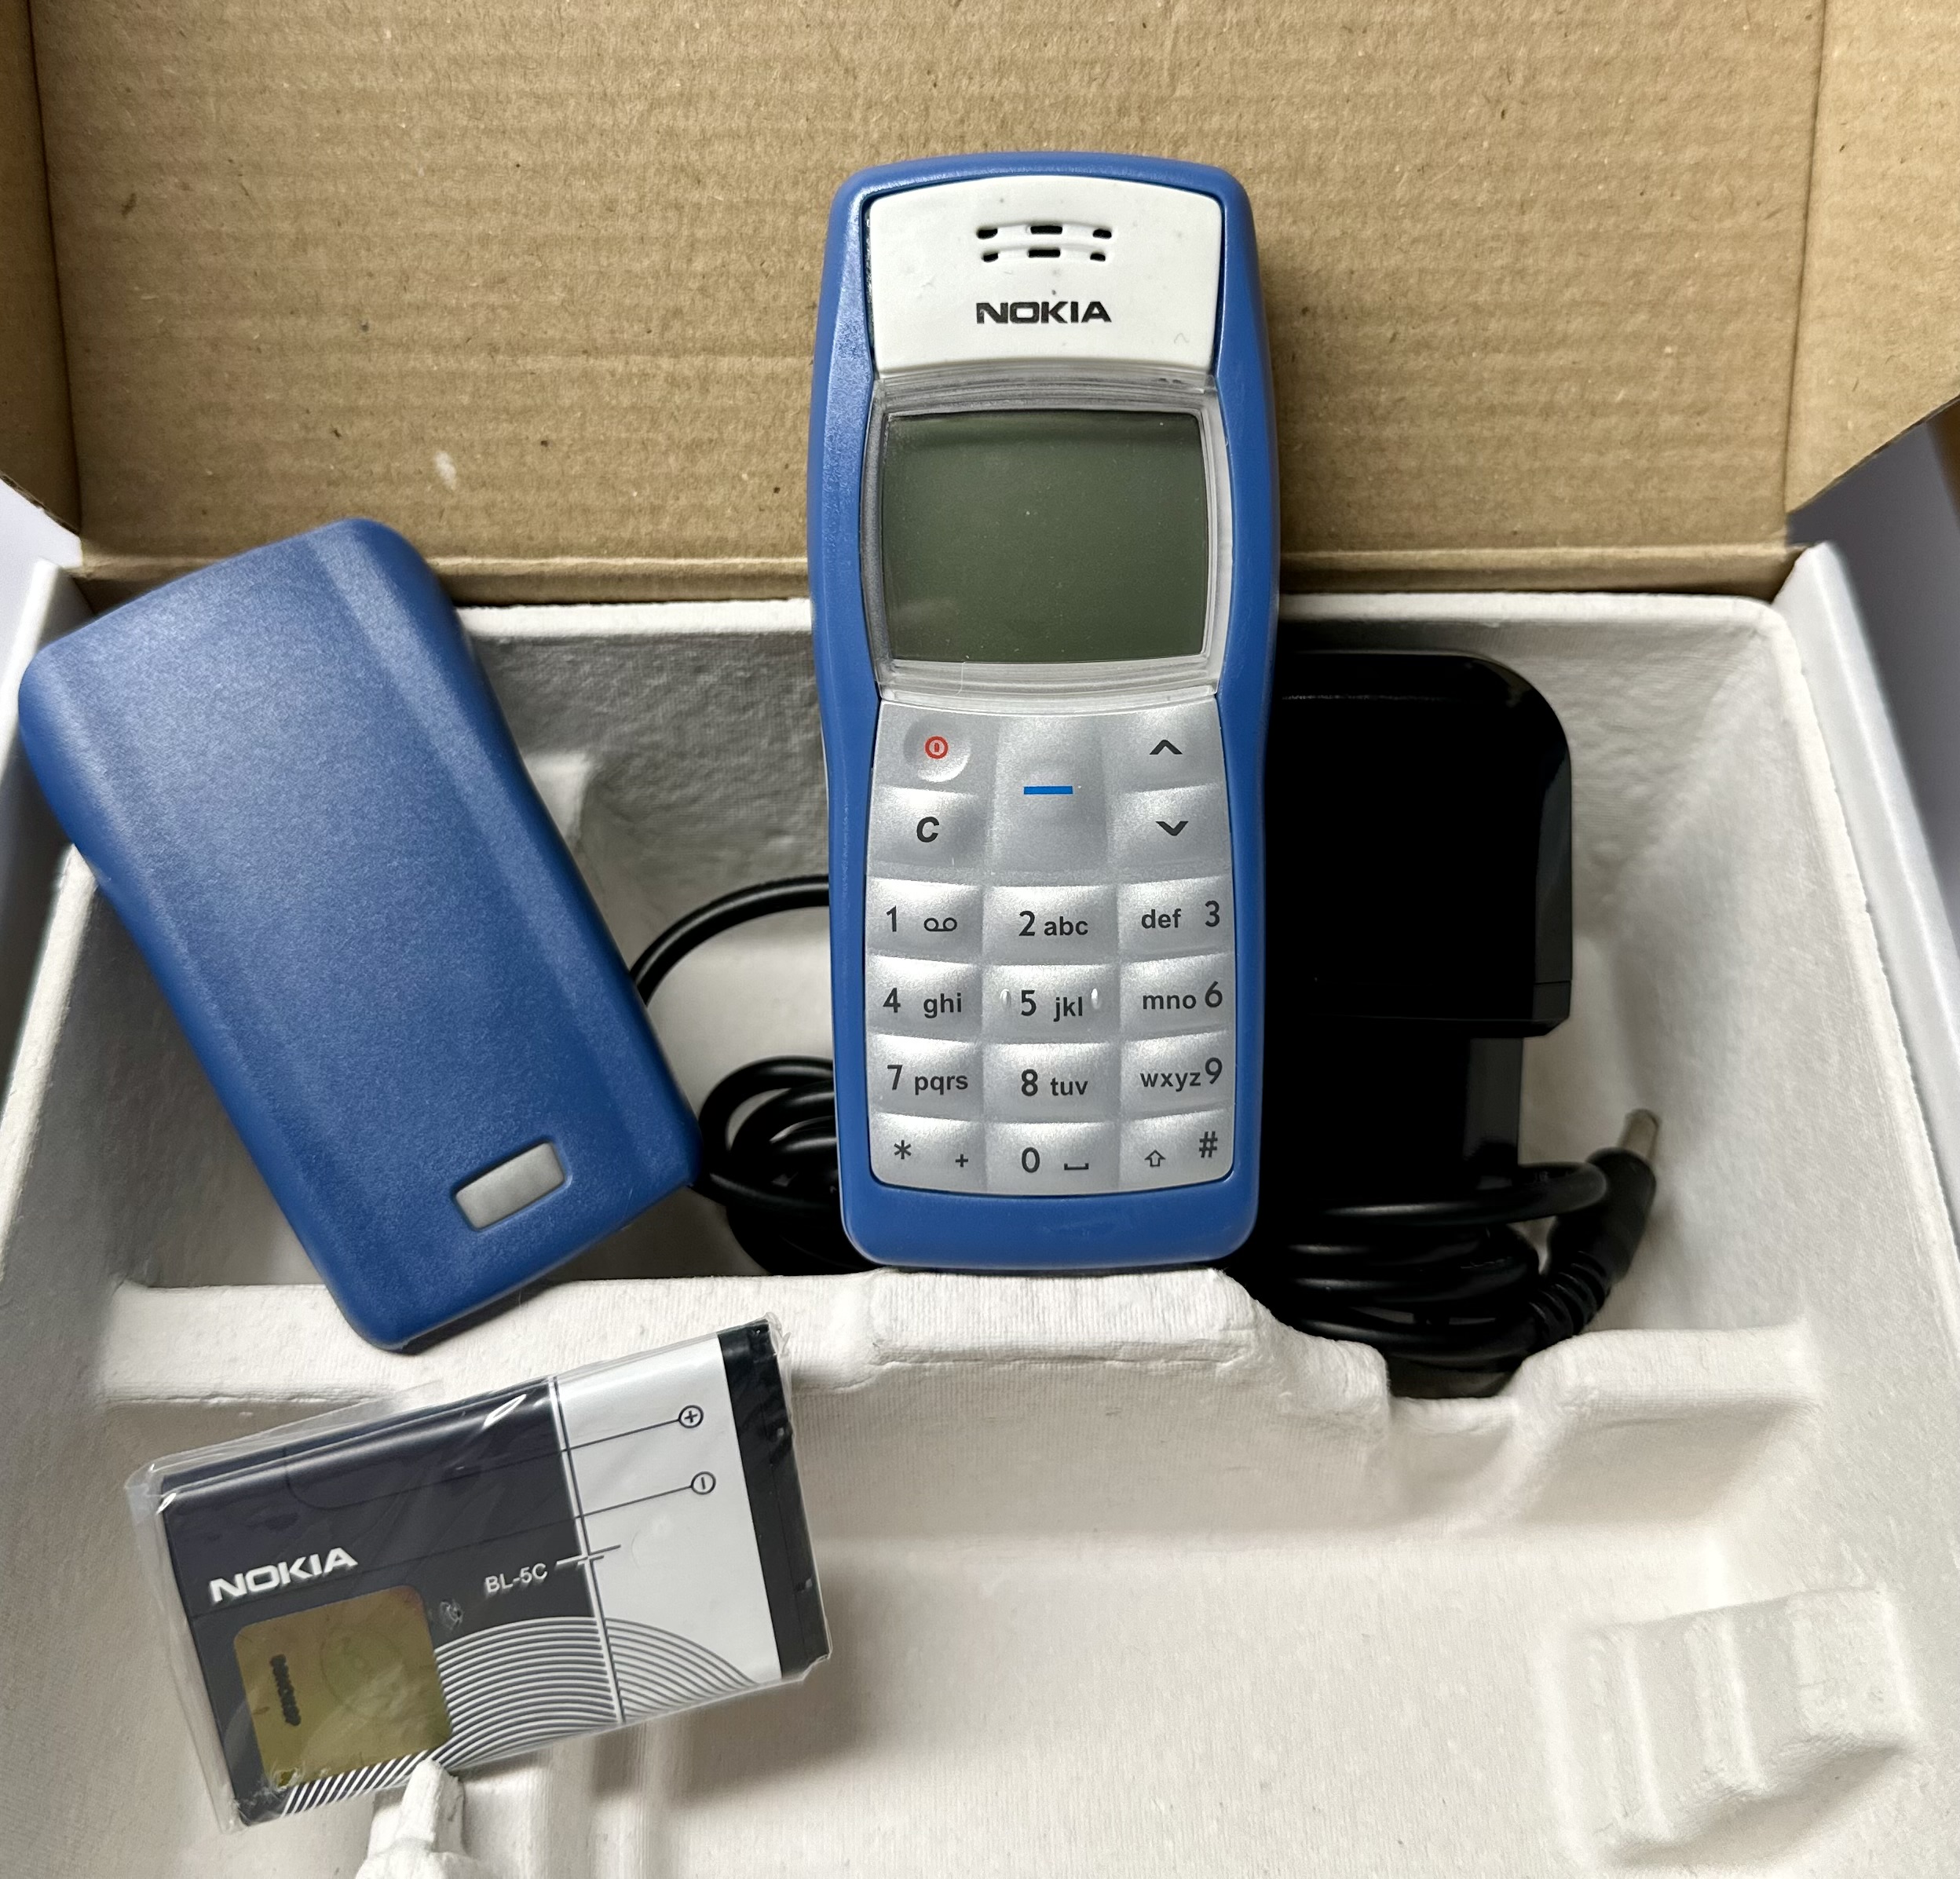 Nokia 1100 RH-18 Tasten-Handy Klein Leicht Dualband Unlocked Mobile Phone wie Neu (Blau)